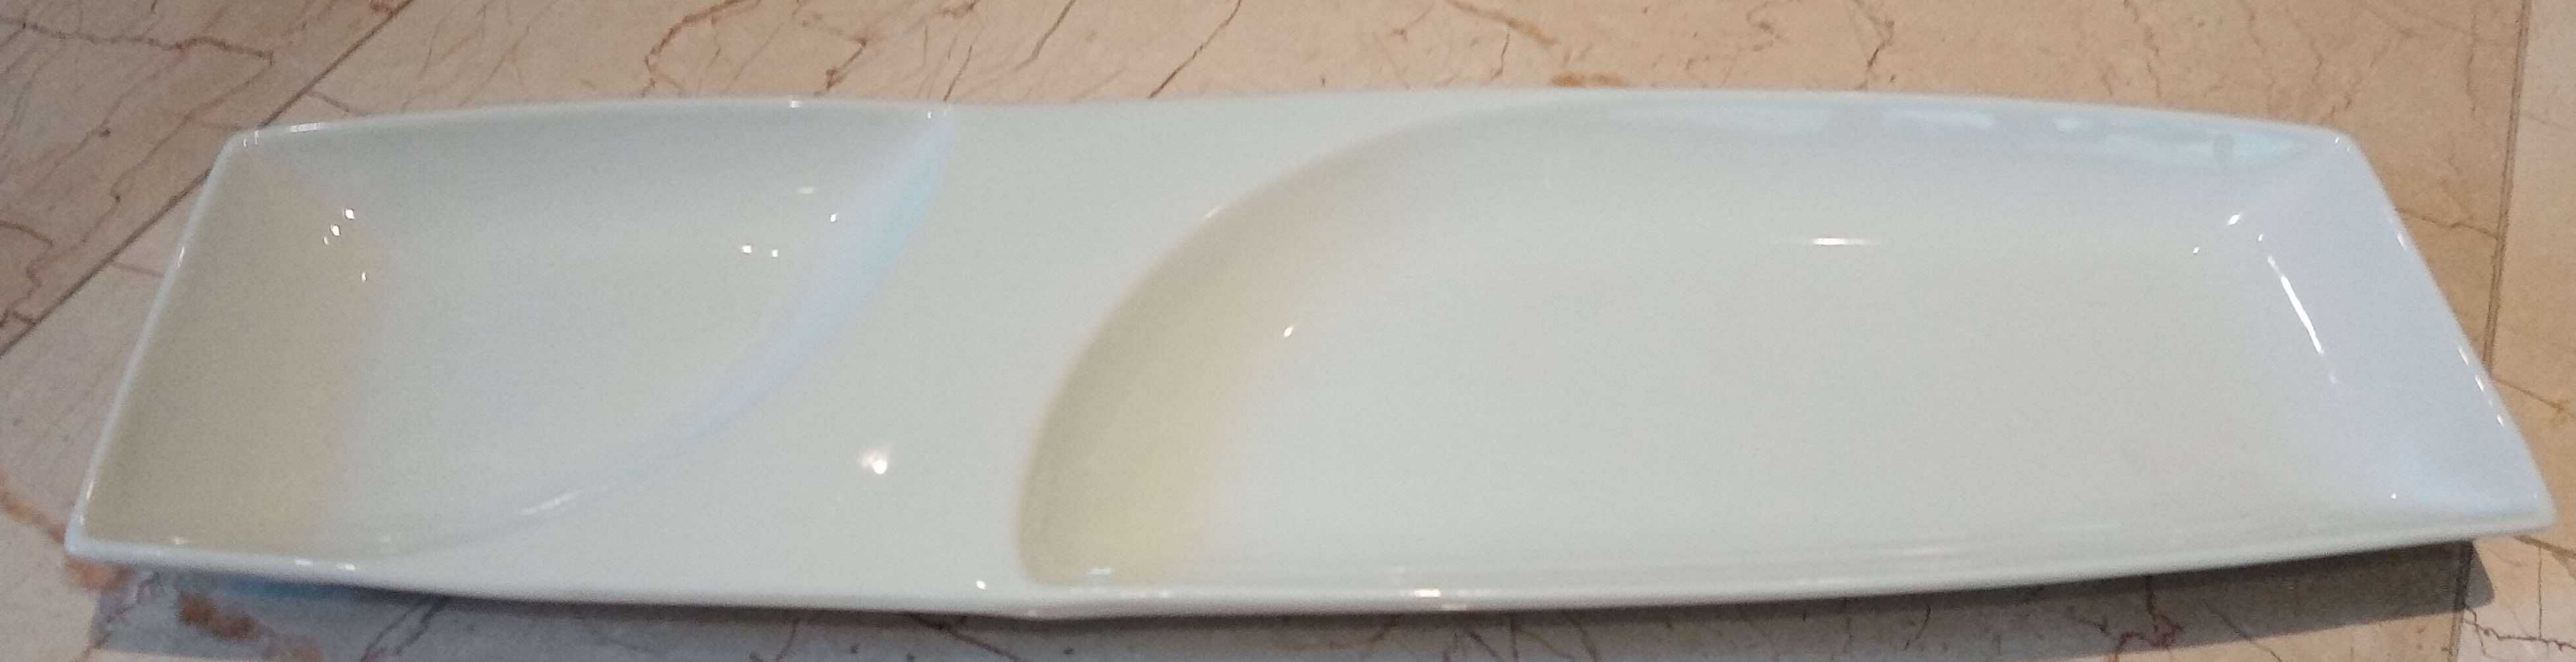 Travessa porcelana aperitivos 54 x 15,5 cm